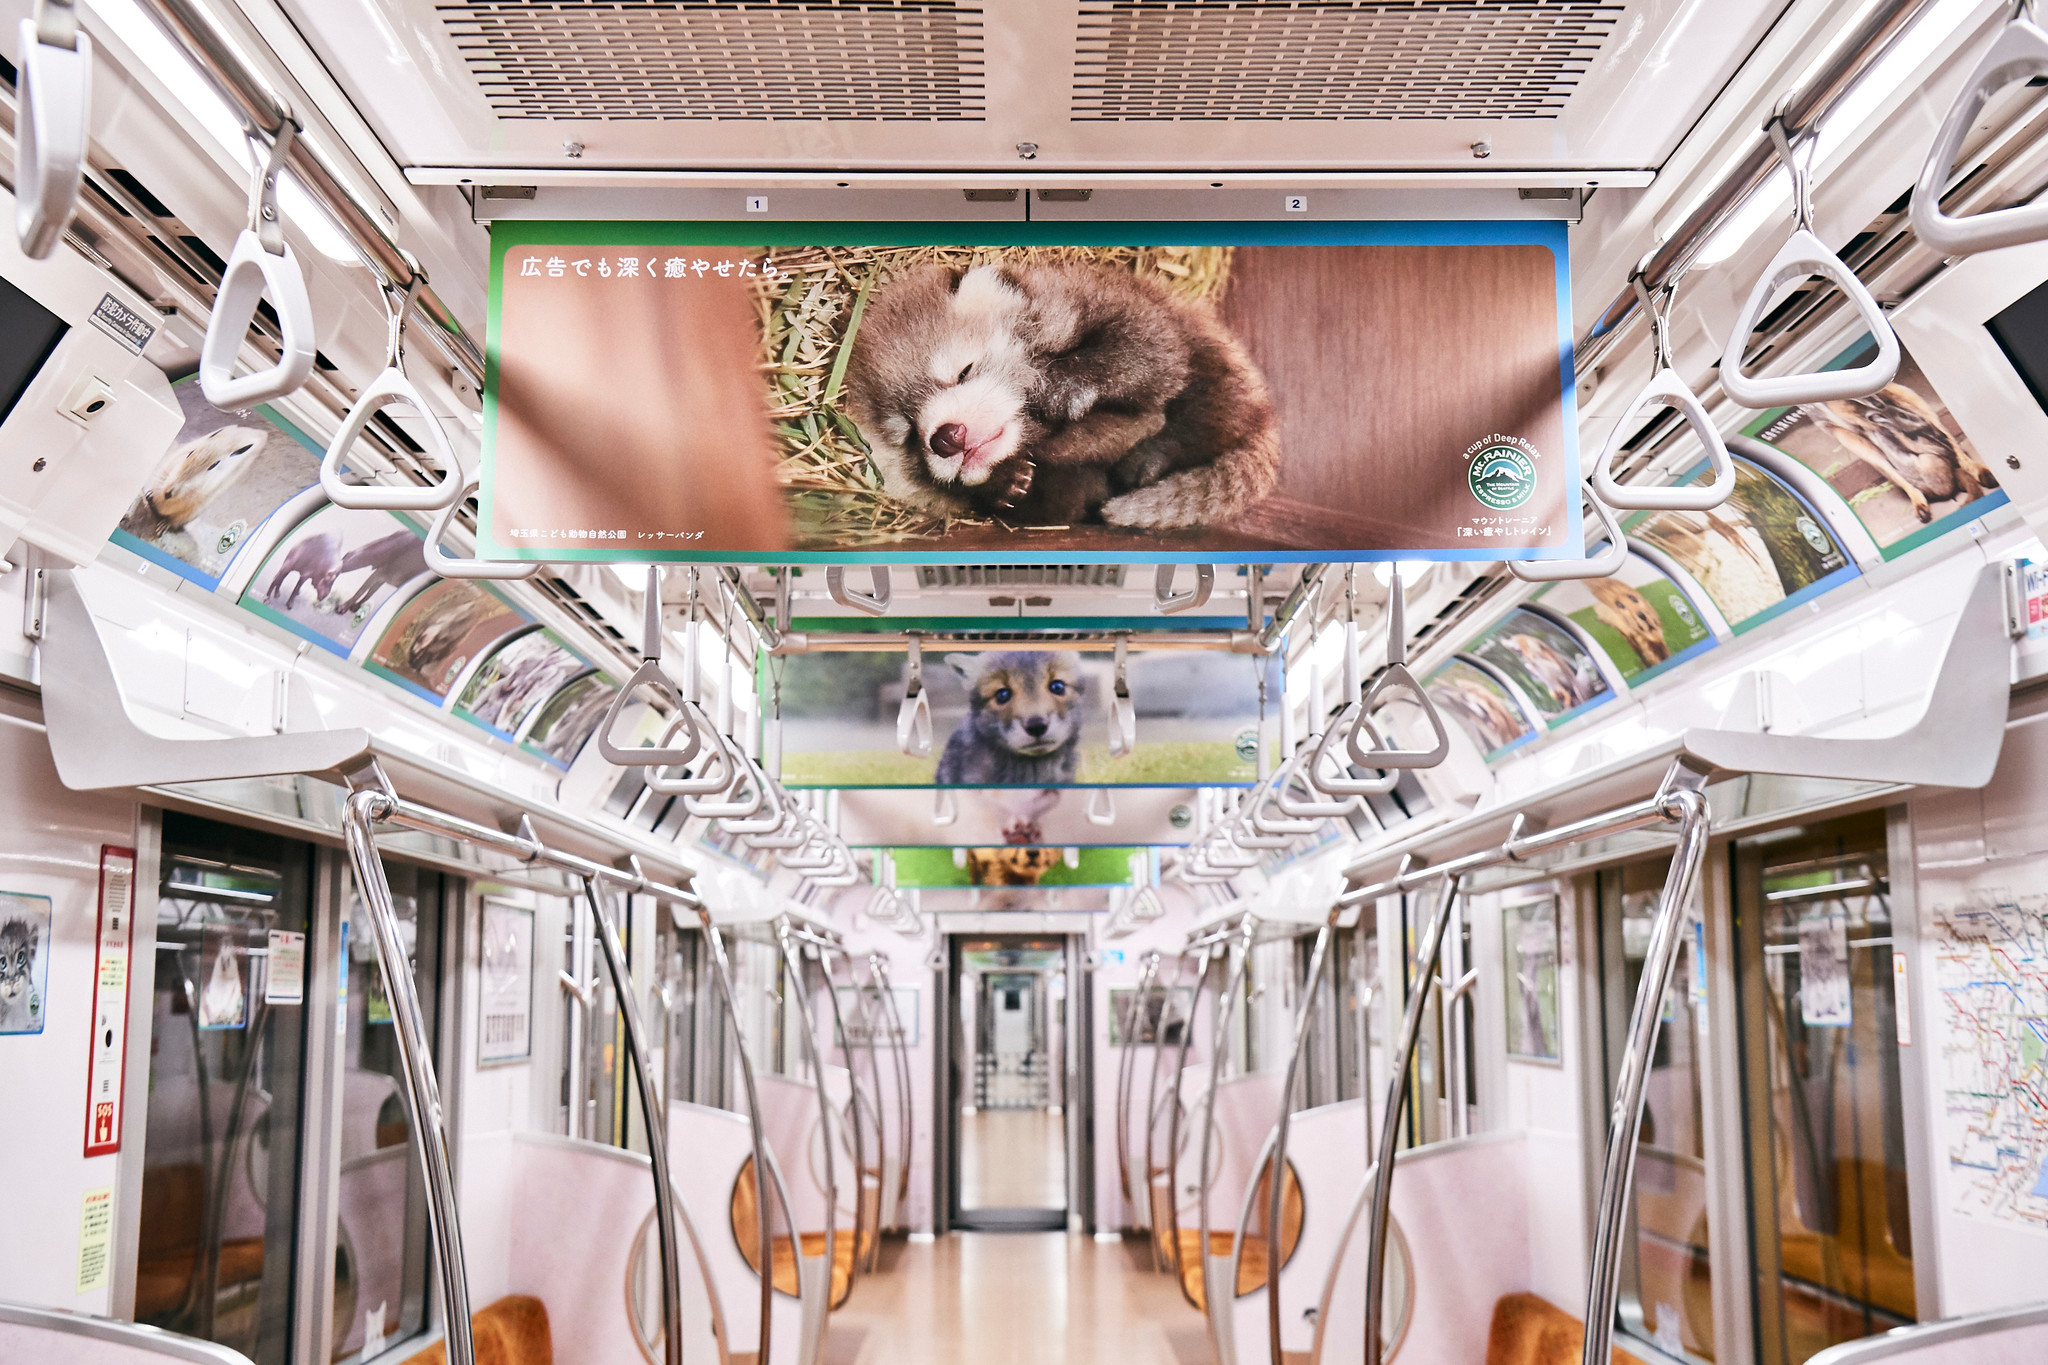 全国の動物園の人気者たちが電車をジャック 電車の中を癒やしの空間にかえる 深い癒やしトレイン が登場 森永乳業株式会社のプレスリリース